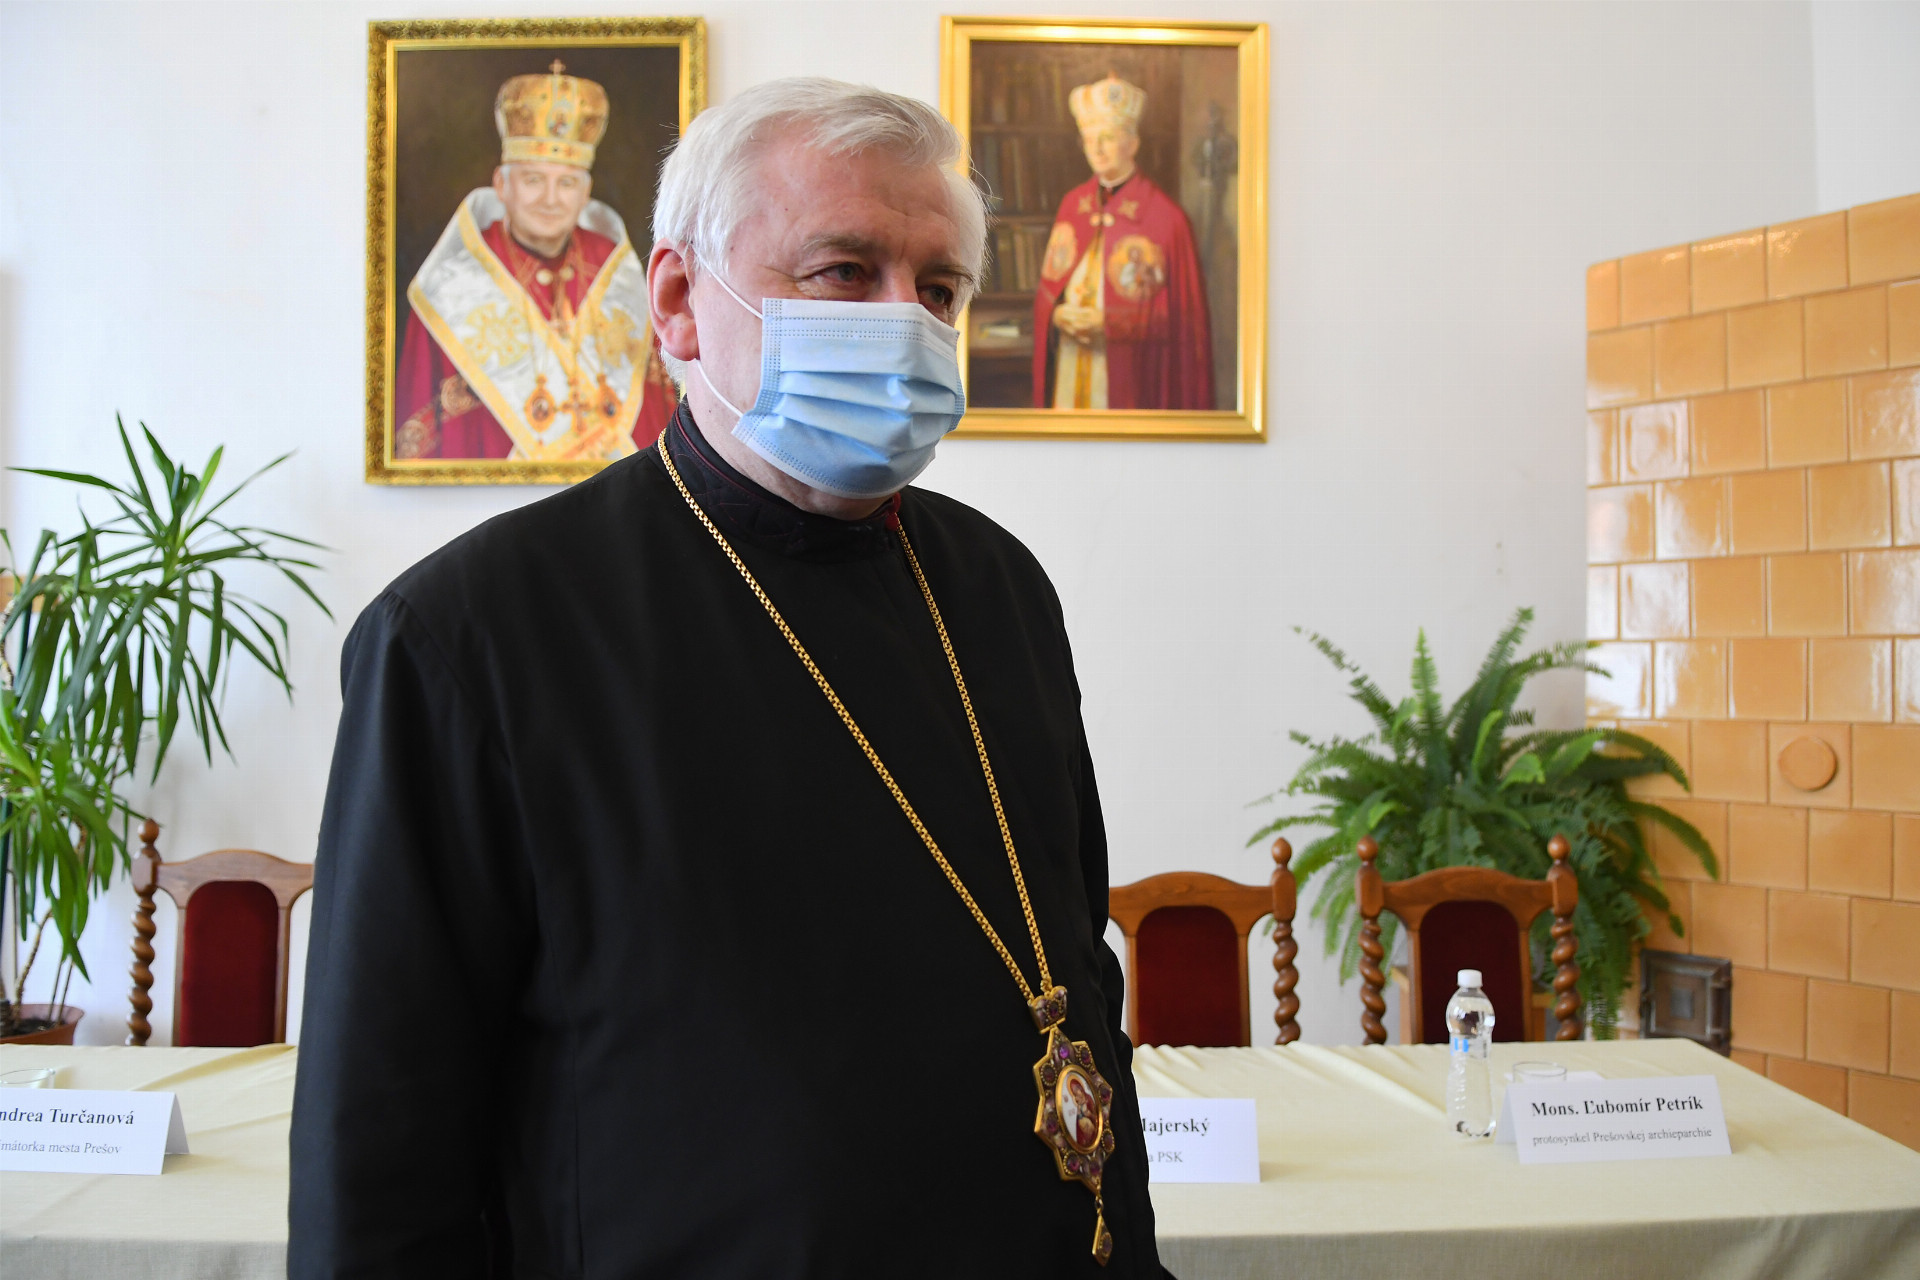 Prešovský arcibiskup sa nakazil na návšteve pápeža (ilu)